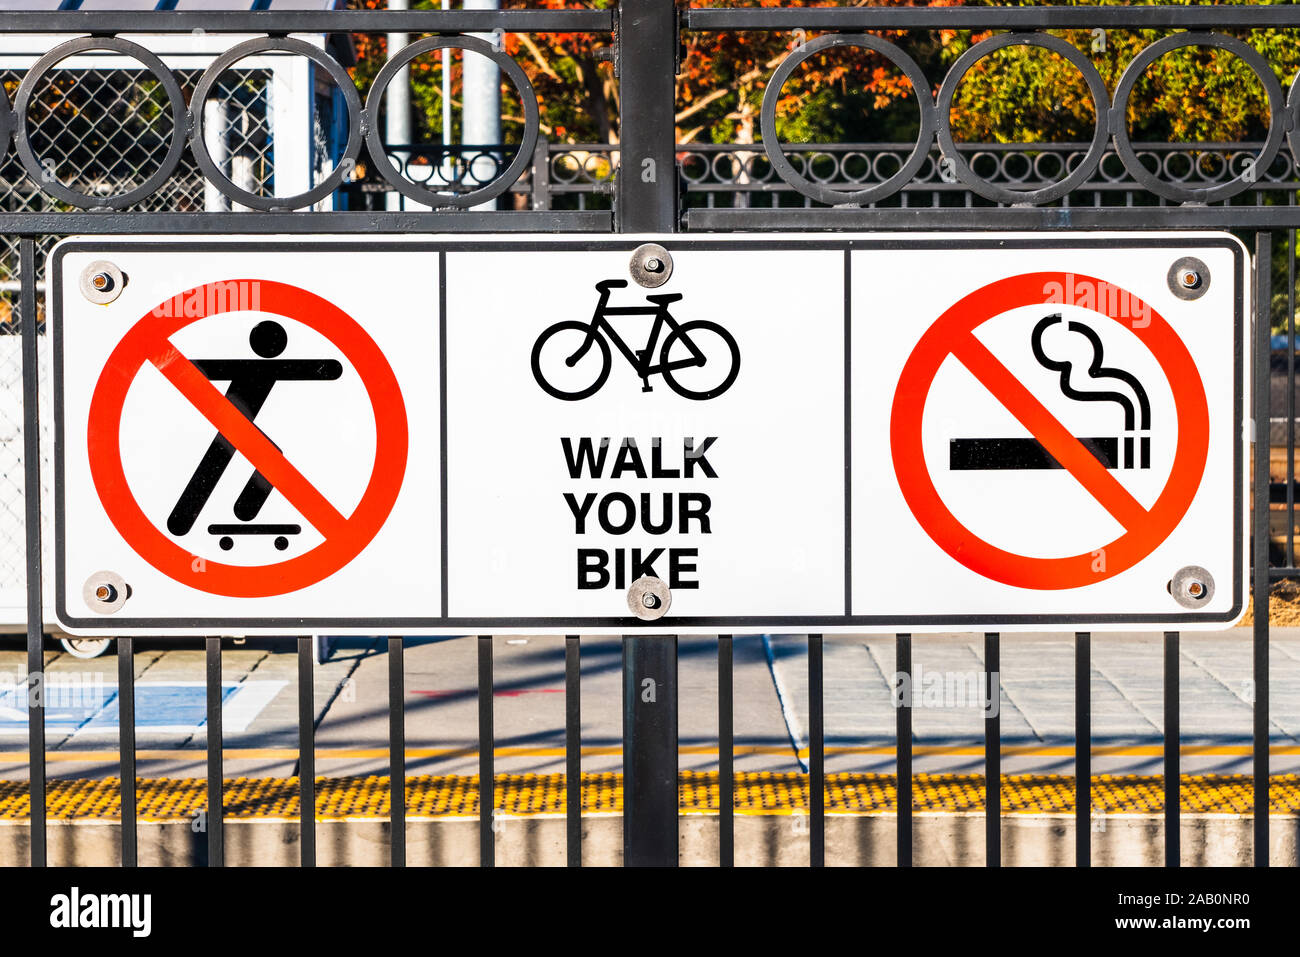 Pas de signes montrant la planche à roulettes, ne pas fumer et poussez votre vélo règles affichées dans une gare Banque D'Images